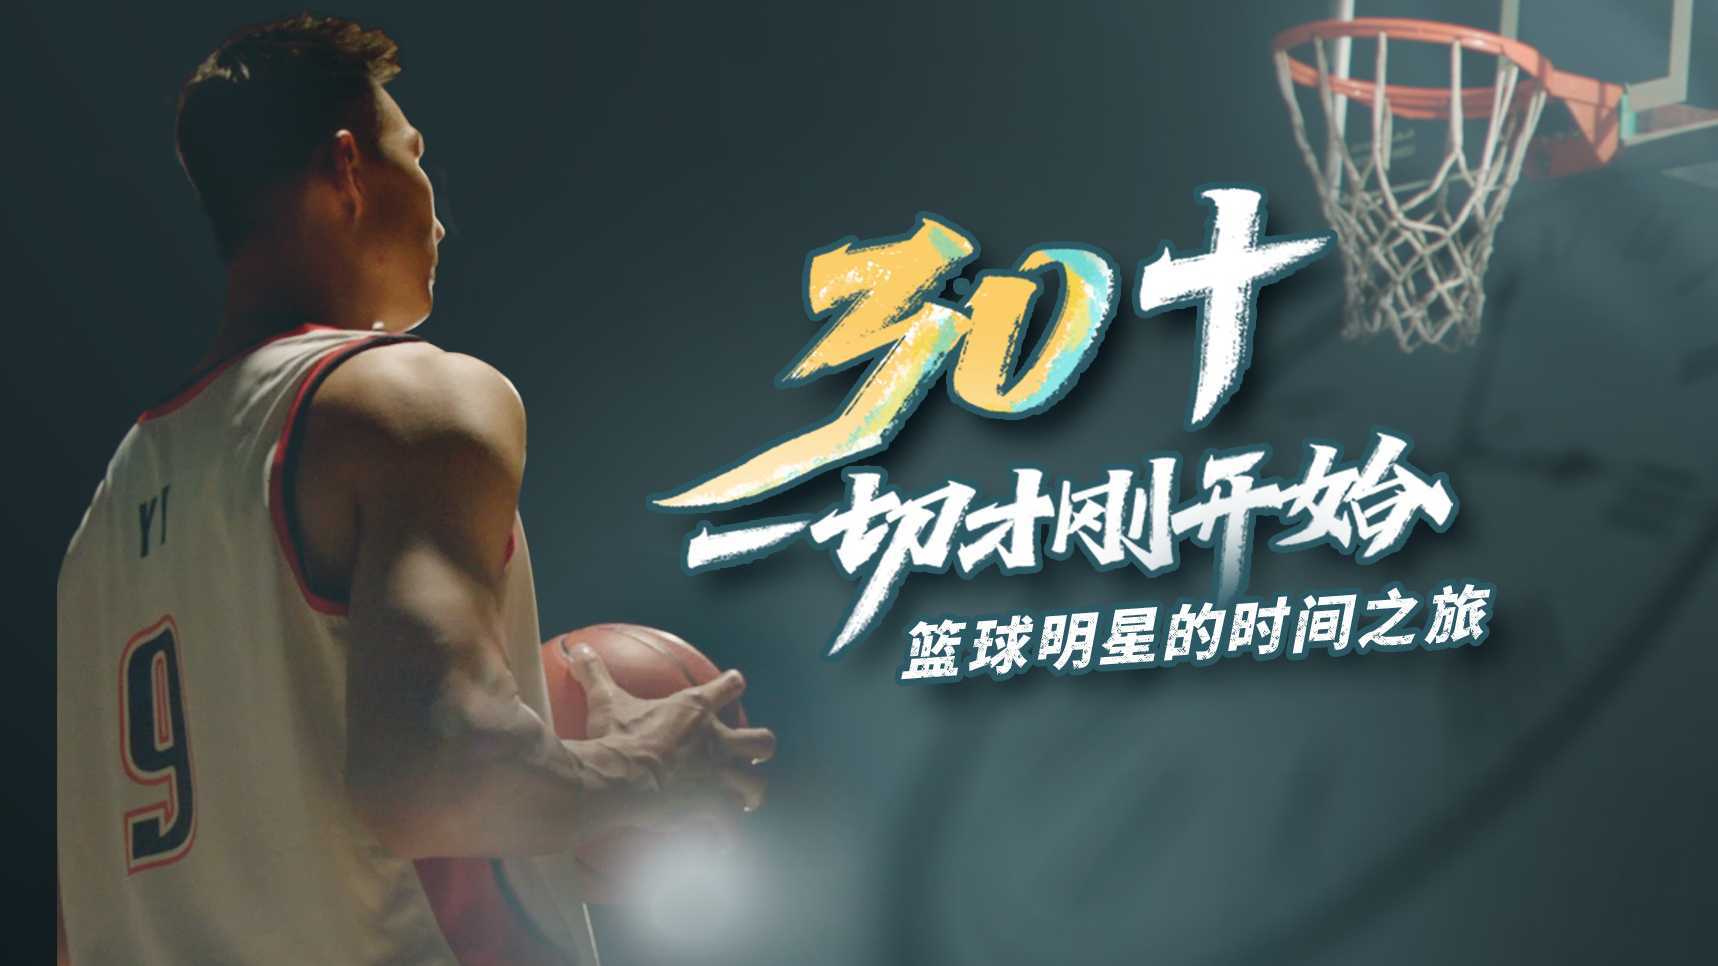 中国人寿上市20周年广告 易建联《30+一切才刚开始》预告片